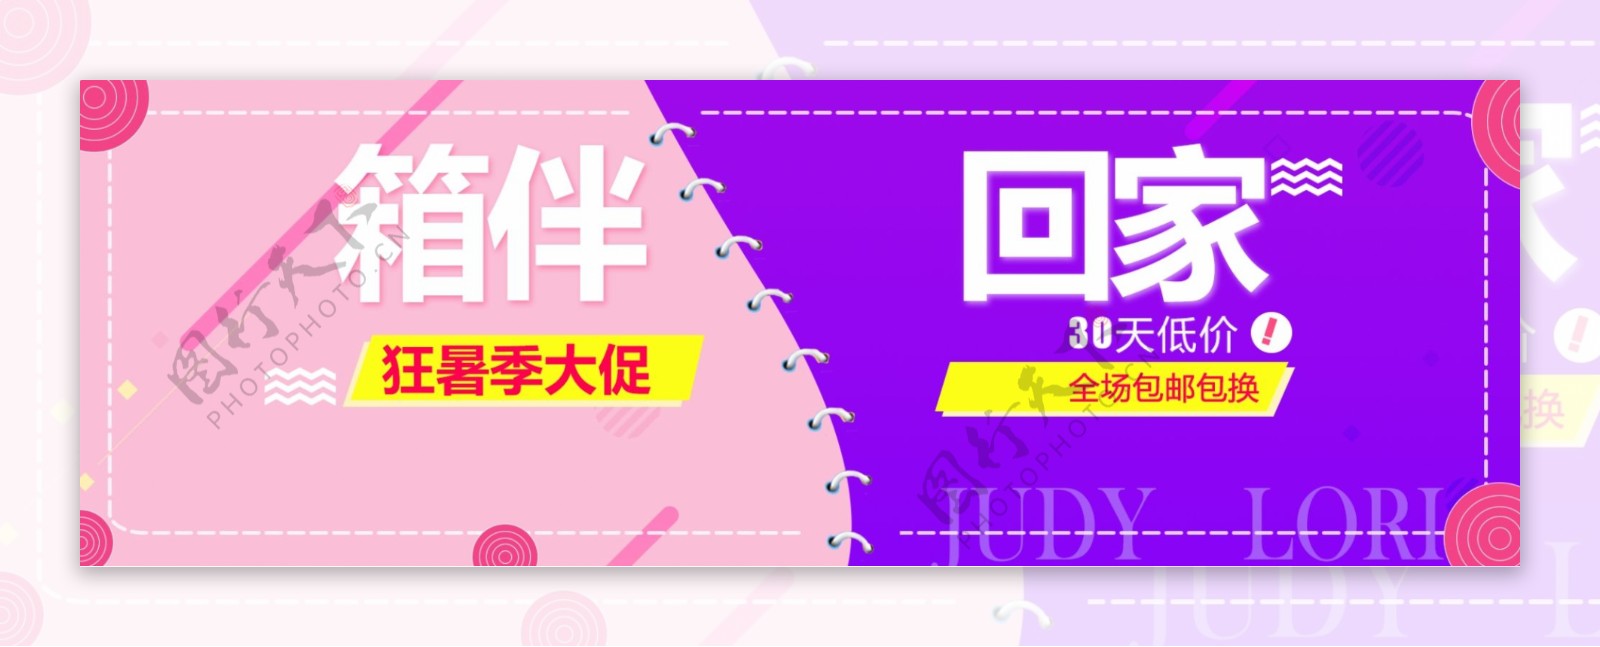 电商淘宝天猫唯美夏季狂暑季箱包促销海报banner